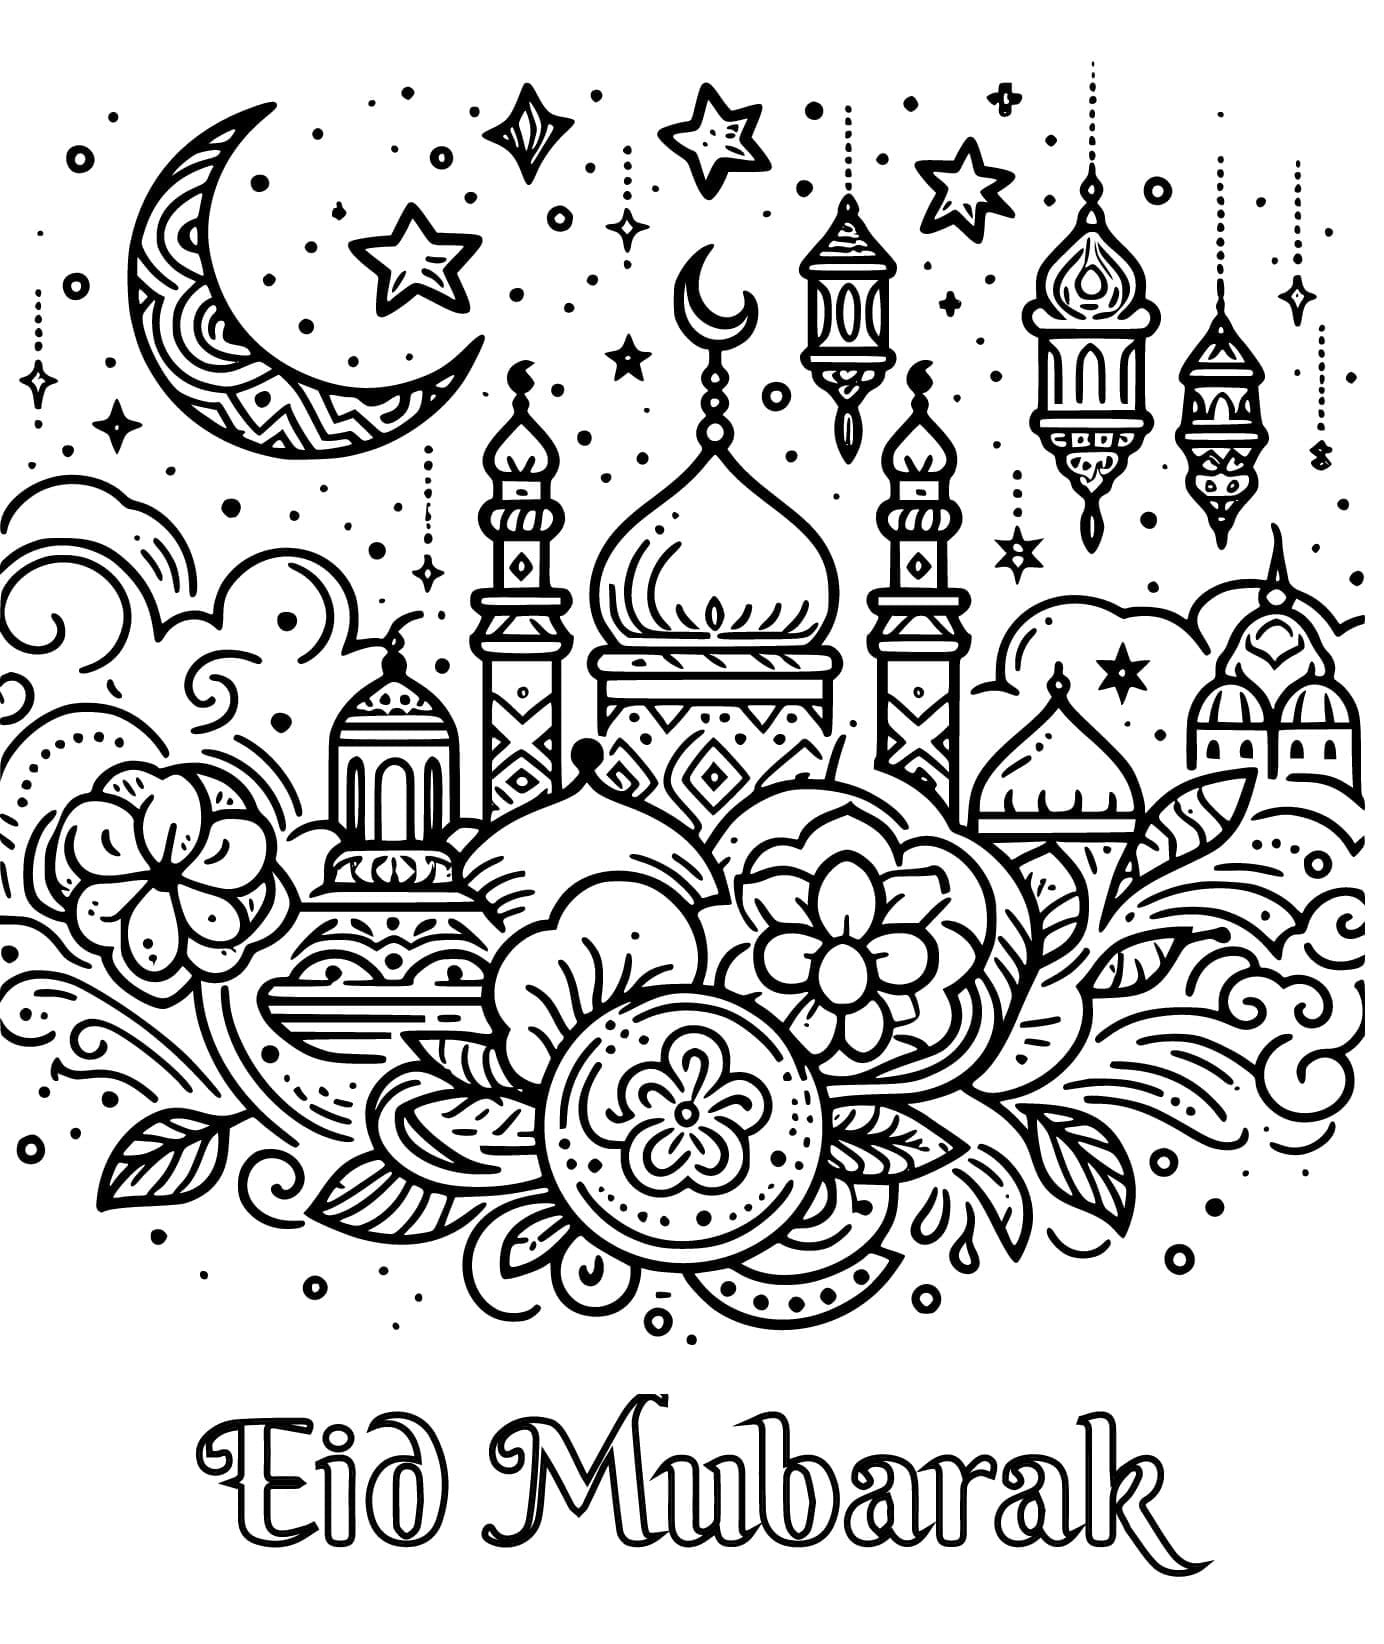 Eid Moebarak viering